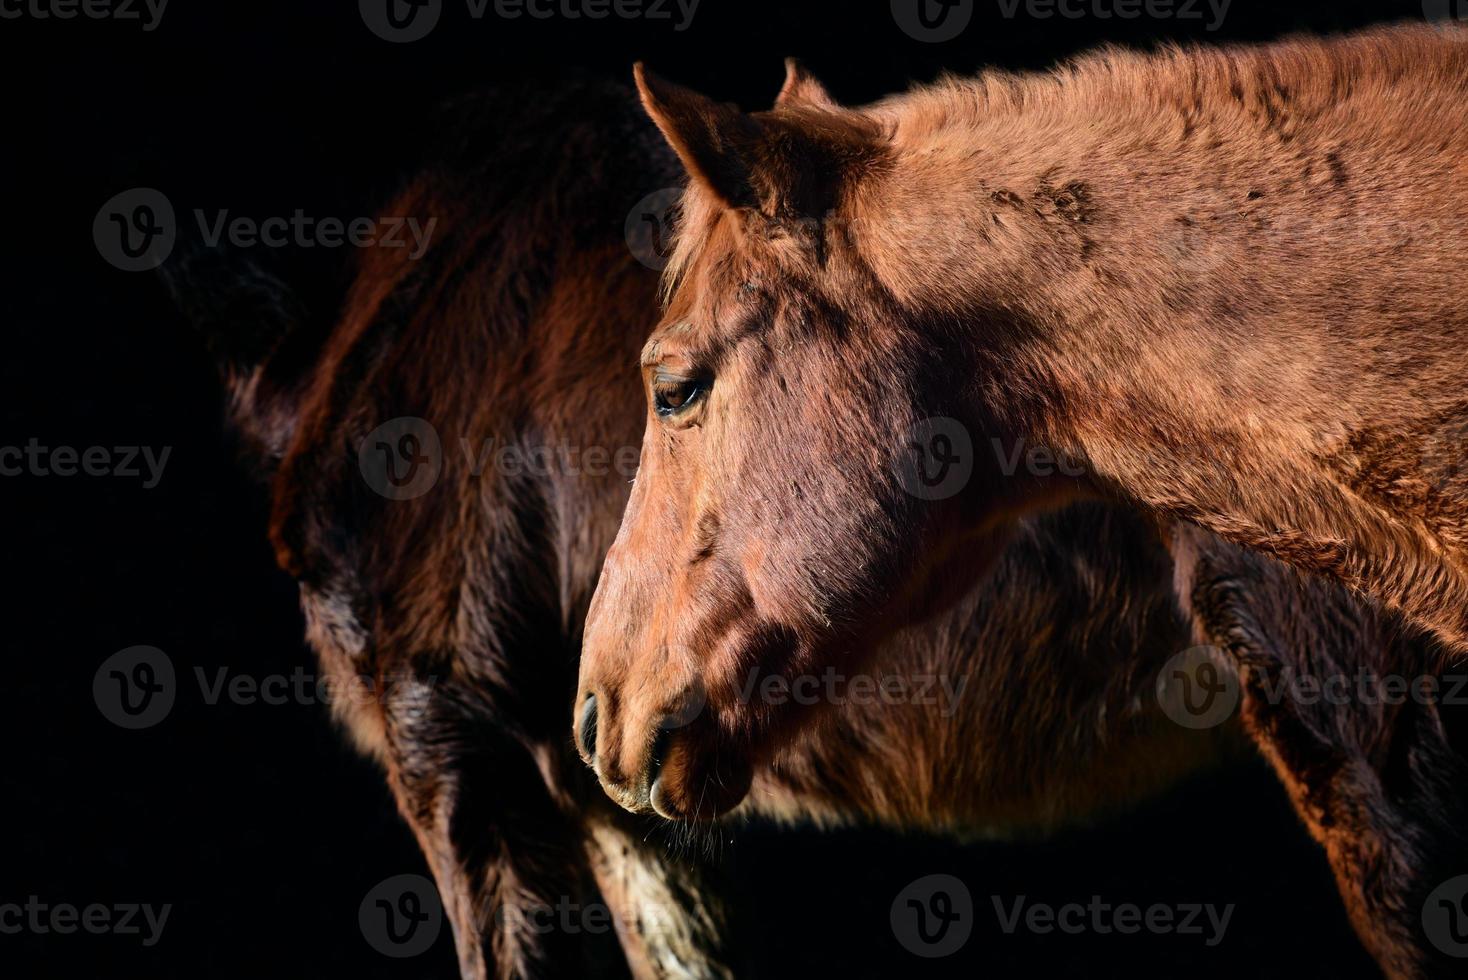 primer plano de un caballo marrón claro con la cabeza y el cuello, frente a otro caballo y contra un fondo oscuro foto